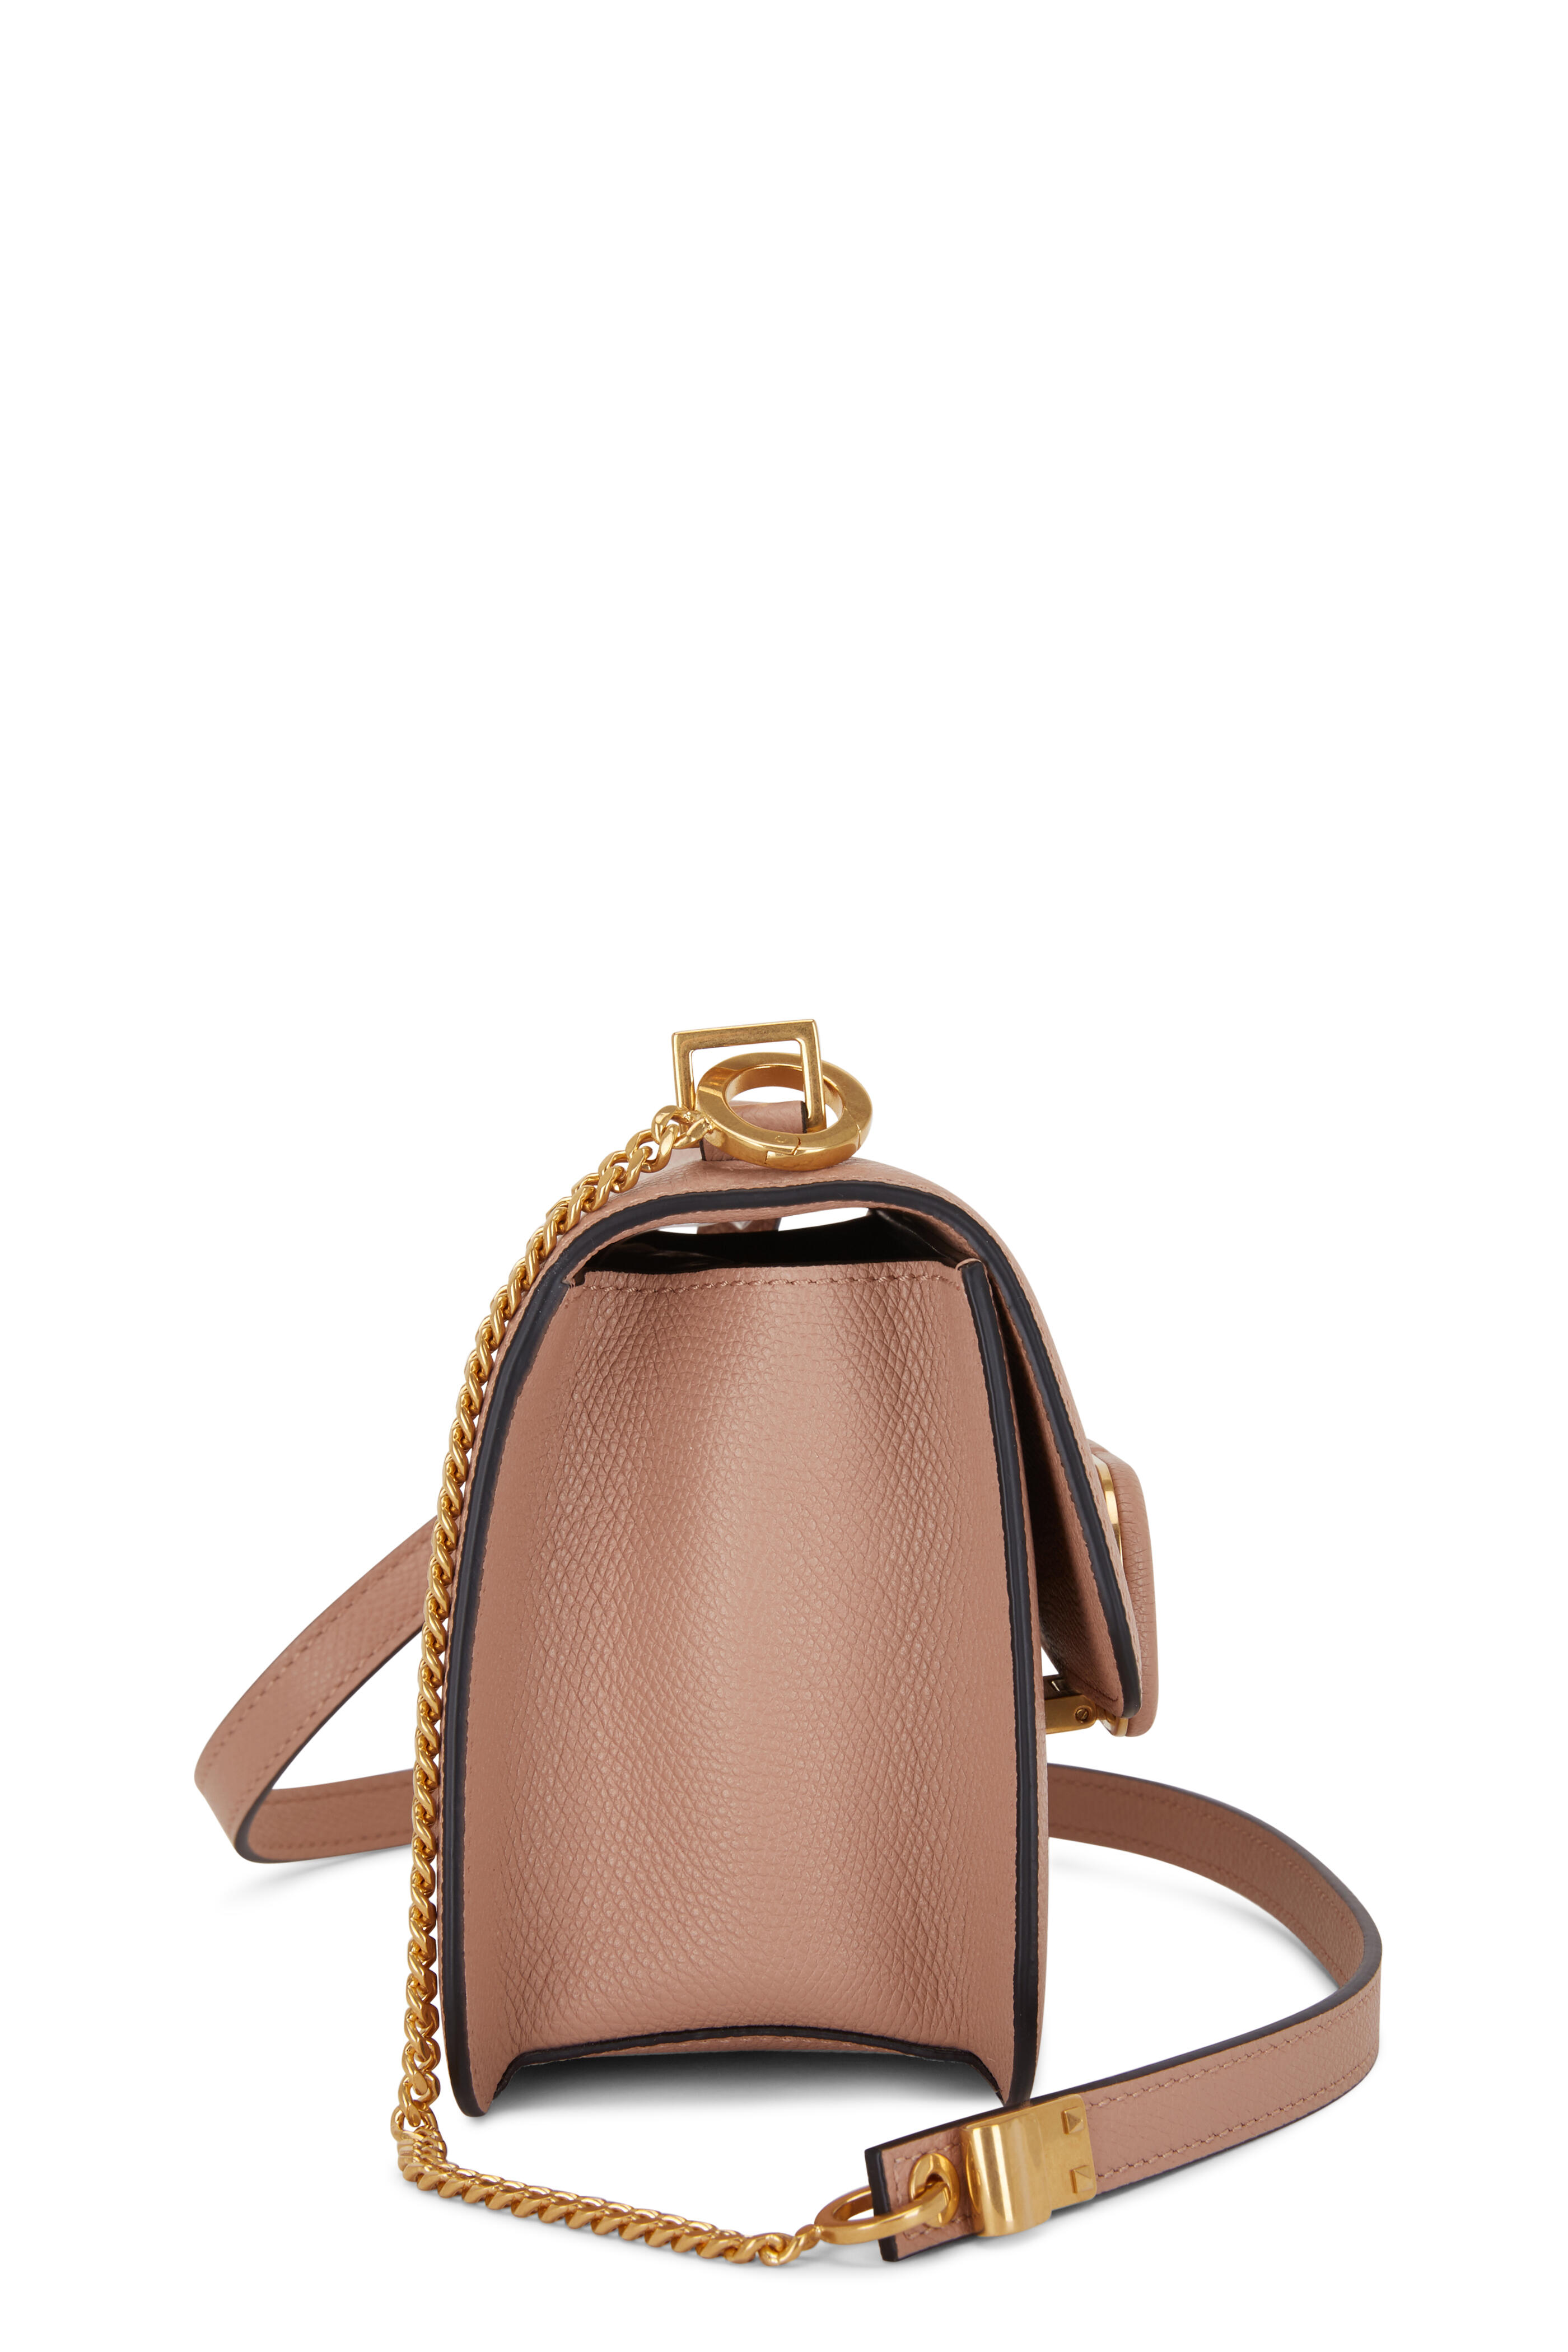 Valentino Garavani 'VSling' Small Shoulder Bag Red Gold Leather MSRP $2575